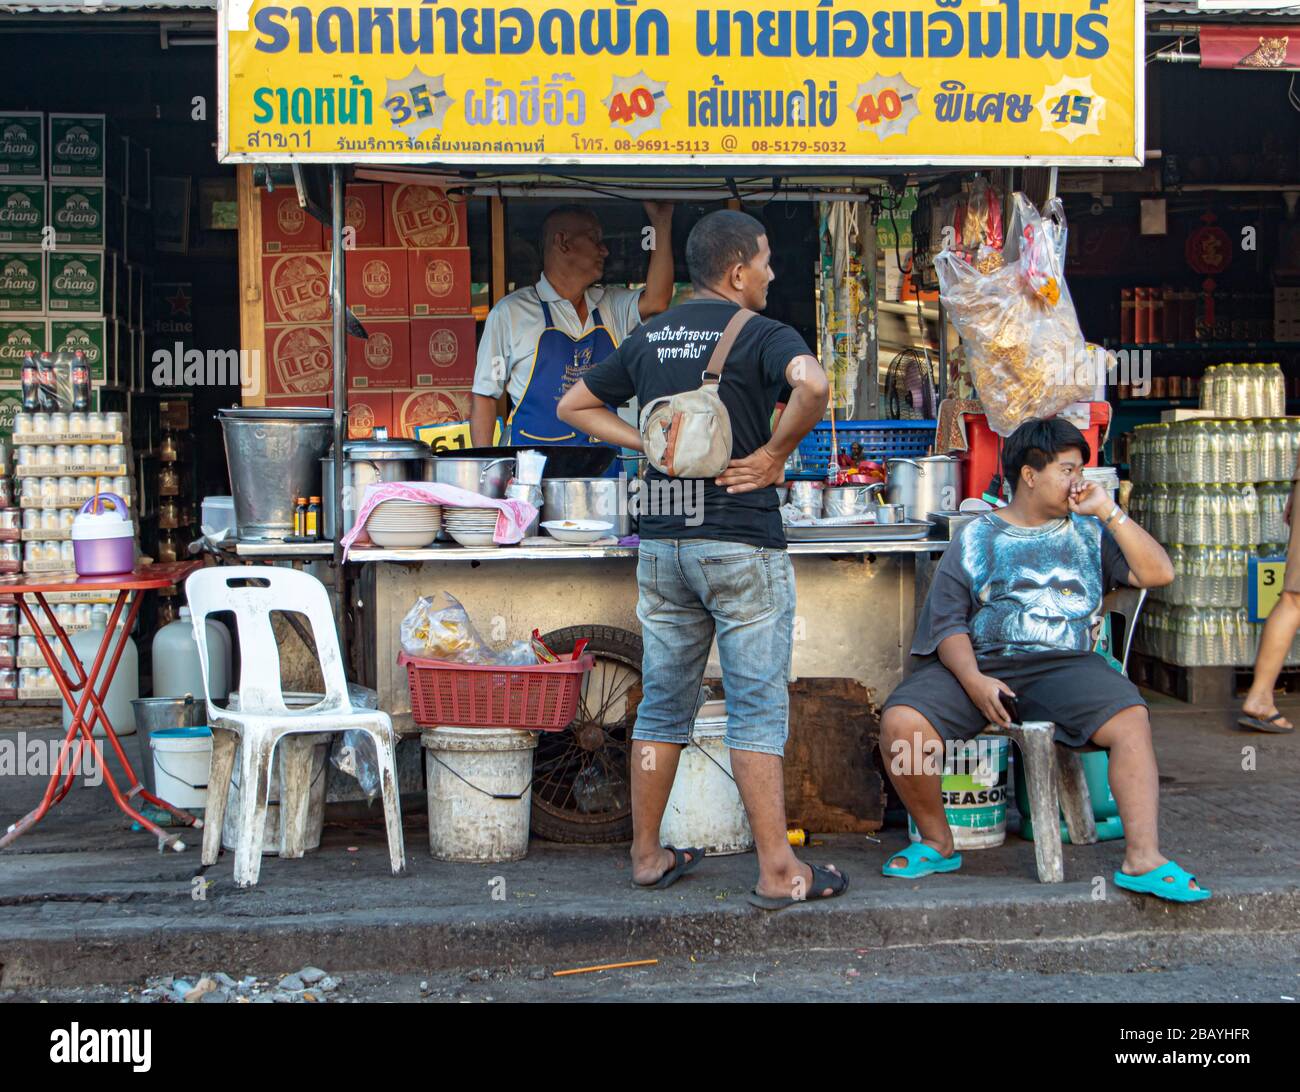 AYUTTHAYA, THAILANDIA, 27 GENNAIO 2020, il venditore di strada offre cibo tailandese - noodle fritto con maiale e un kale immerso nel sugo. Foto Stock